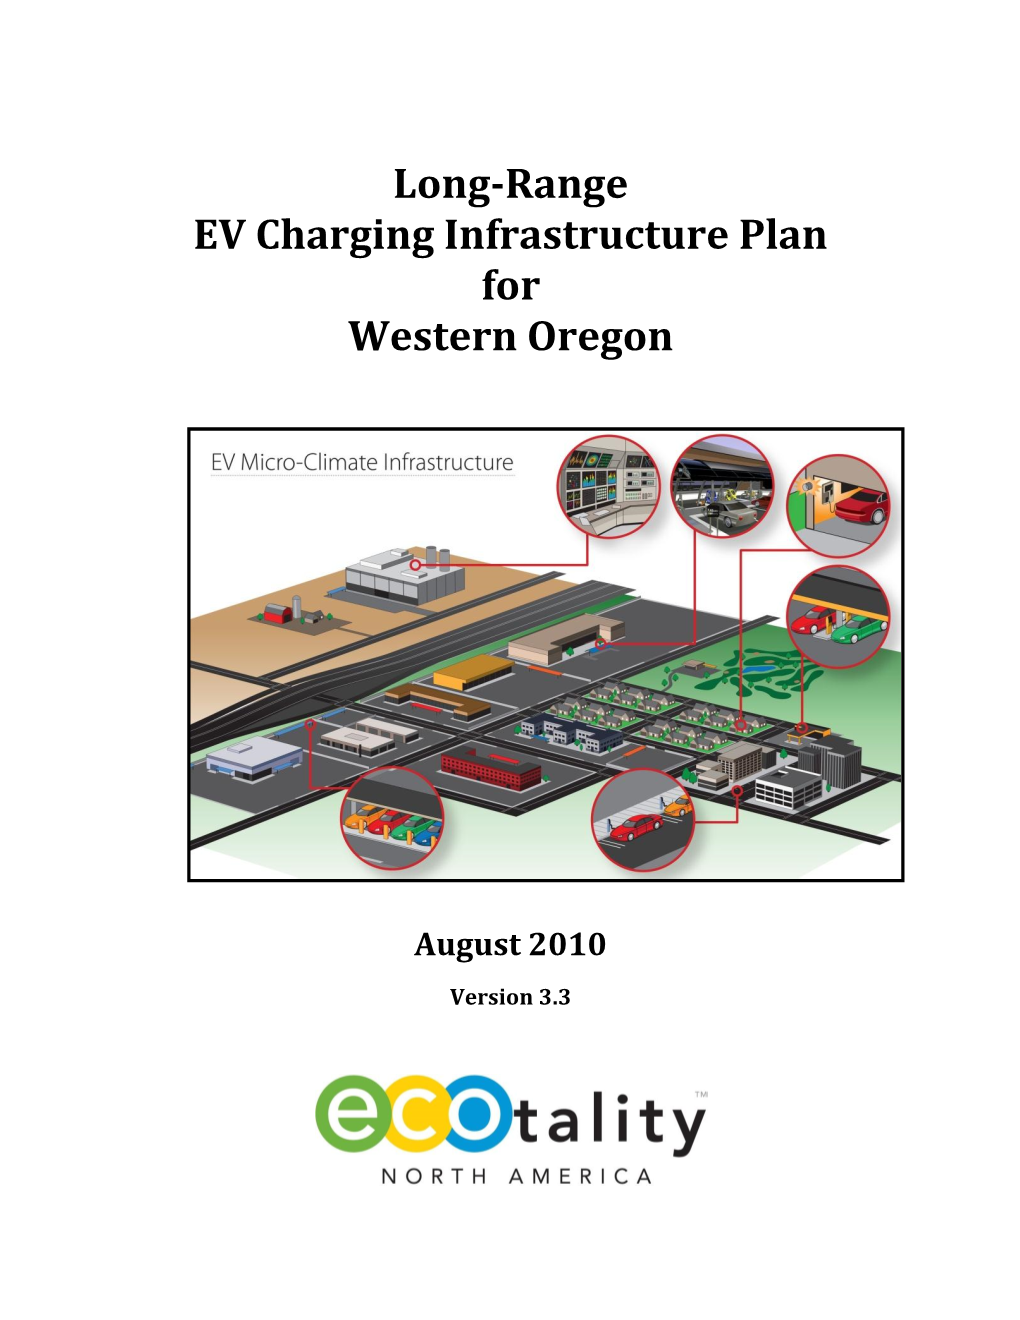 Long-Range EV Charging Infrastructure Plan for Western Oregon